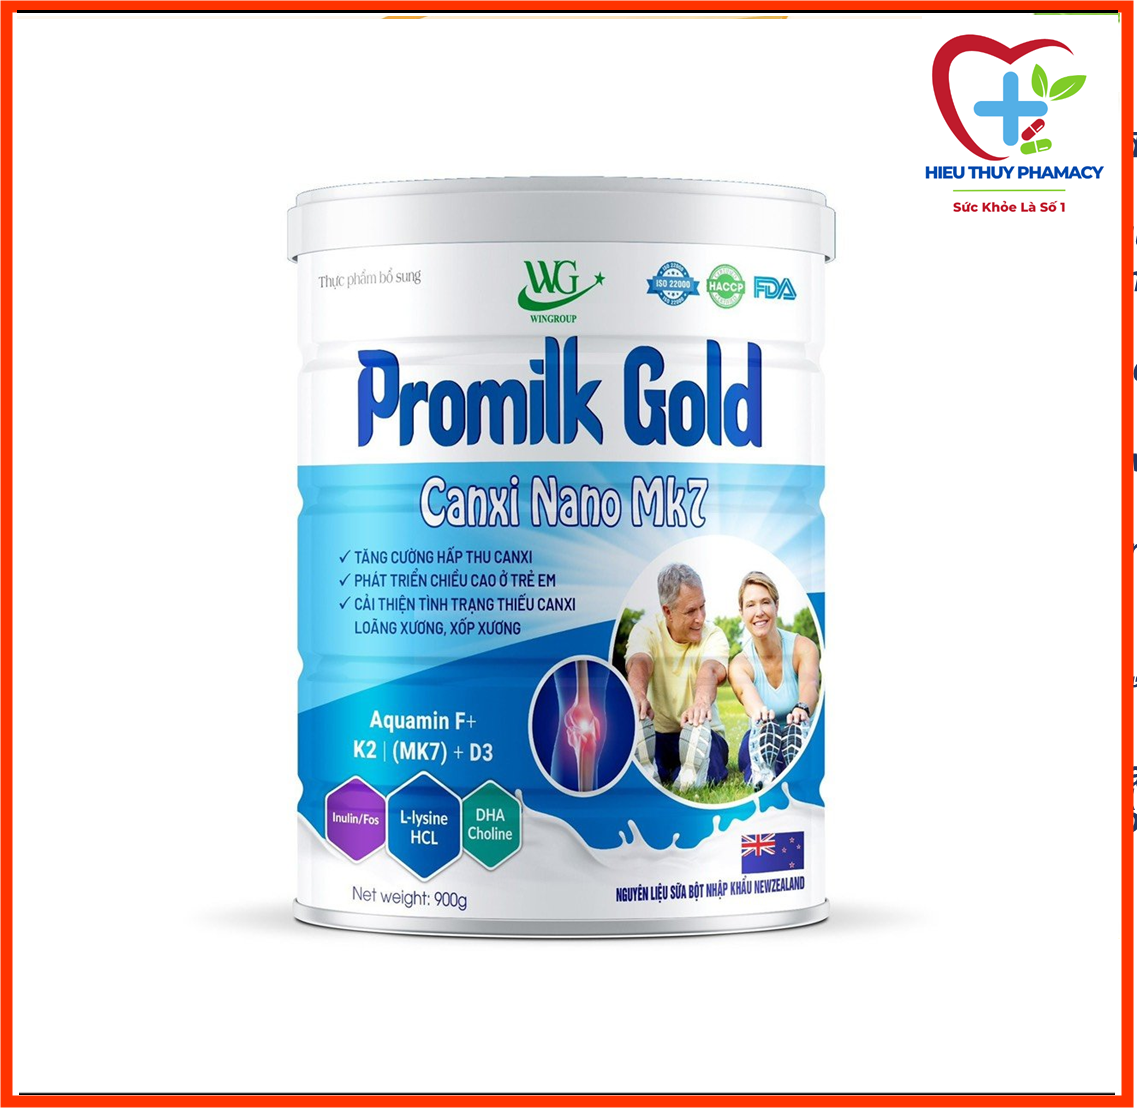 Hộp 900g Sữa Promilk Gold Canxi Nano Mk7 Tăng Cường Hấp Thụ Canxi Phát Triển Chiều Cao Ở Trẻ Em Cải Thiện Tình Trạng Thiếu Canxi Loãng Xương  Xốp Xương- Hiếu Thủy phamacy